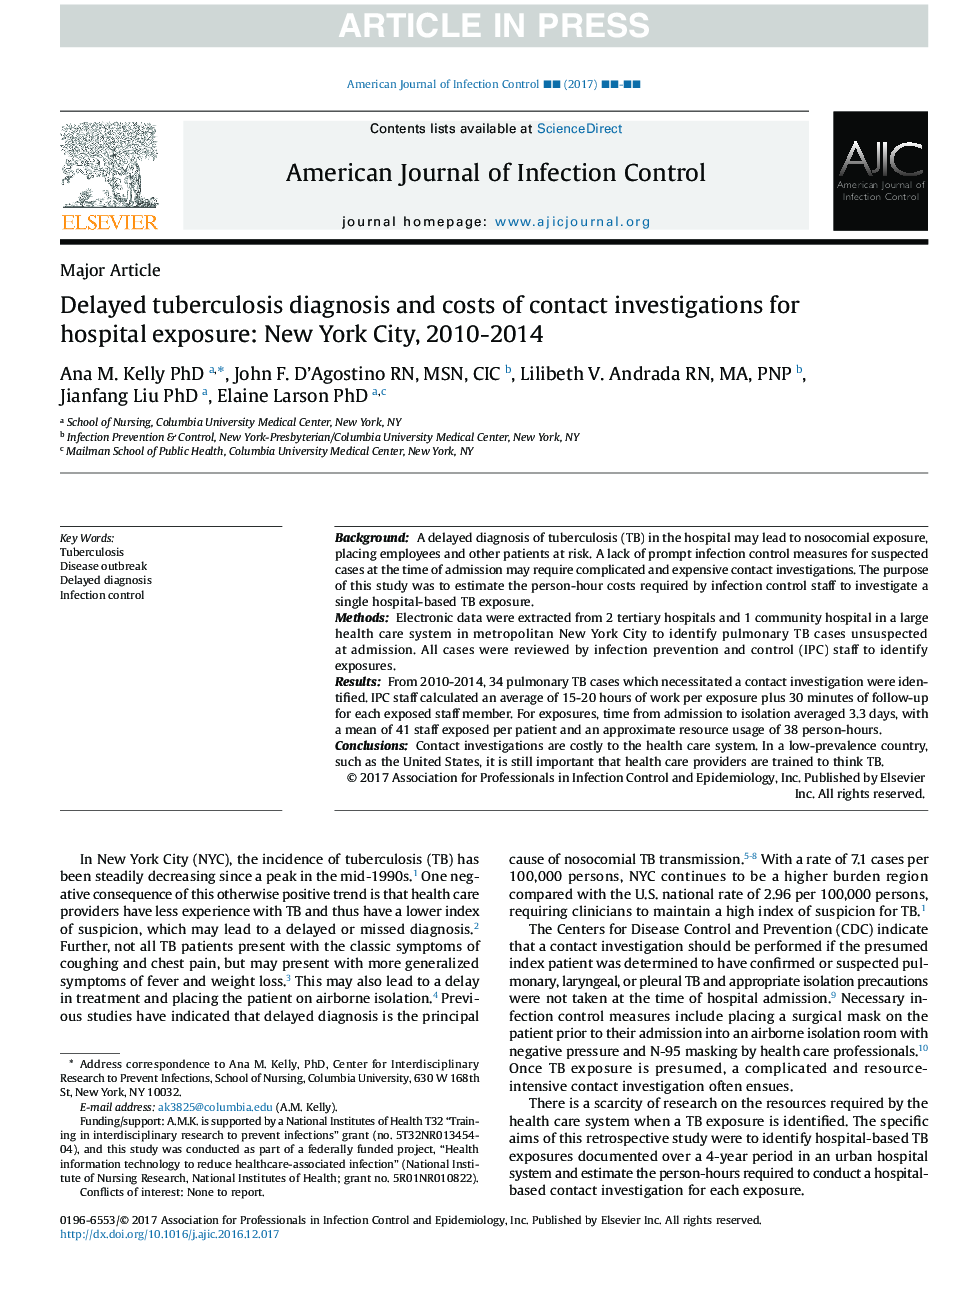 تشخیص سل باردار و هزینه های تحقیقات تماس برای قرار گرفتن در معرض بیمارستان: شهر نیویورک، 2010-2014 